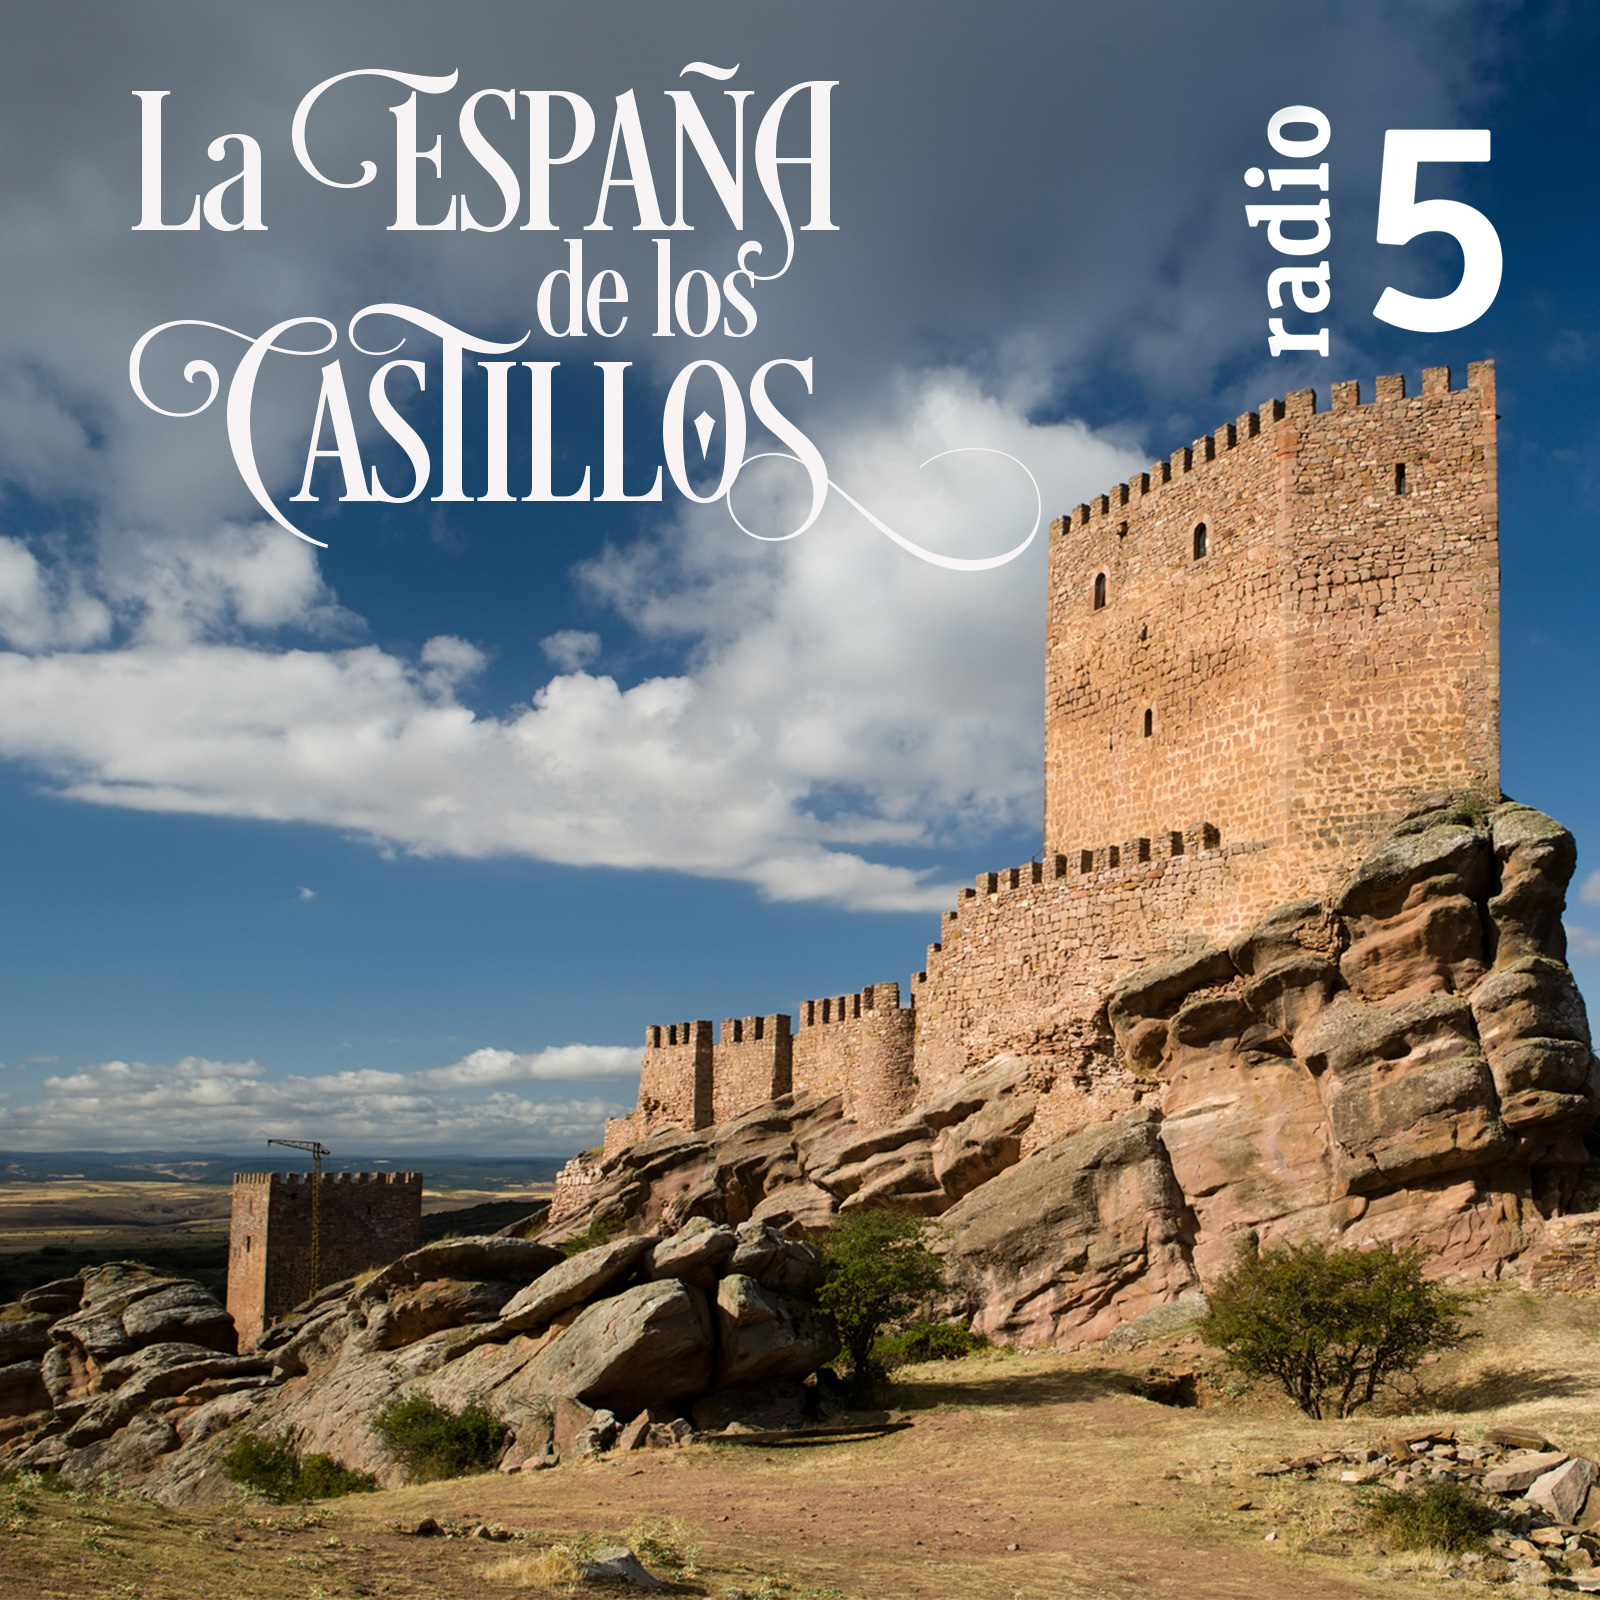 La España de los castillos - Castillo de Lorca - 18/05/19